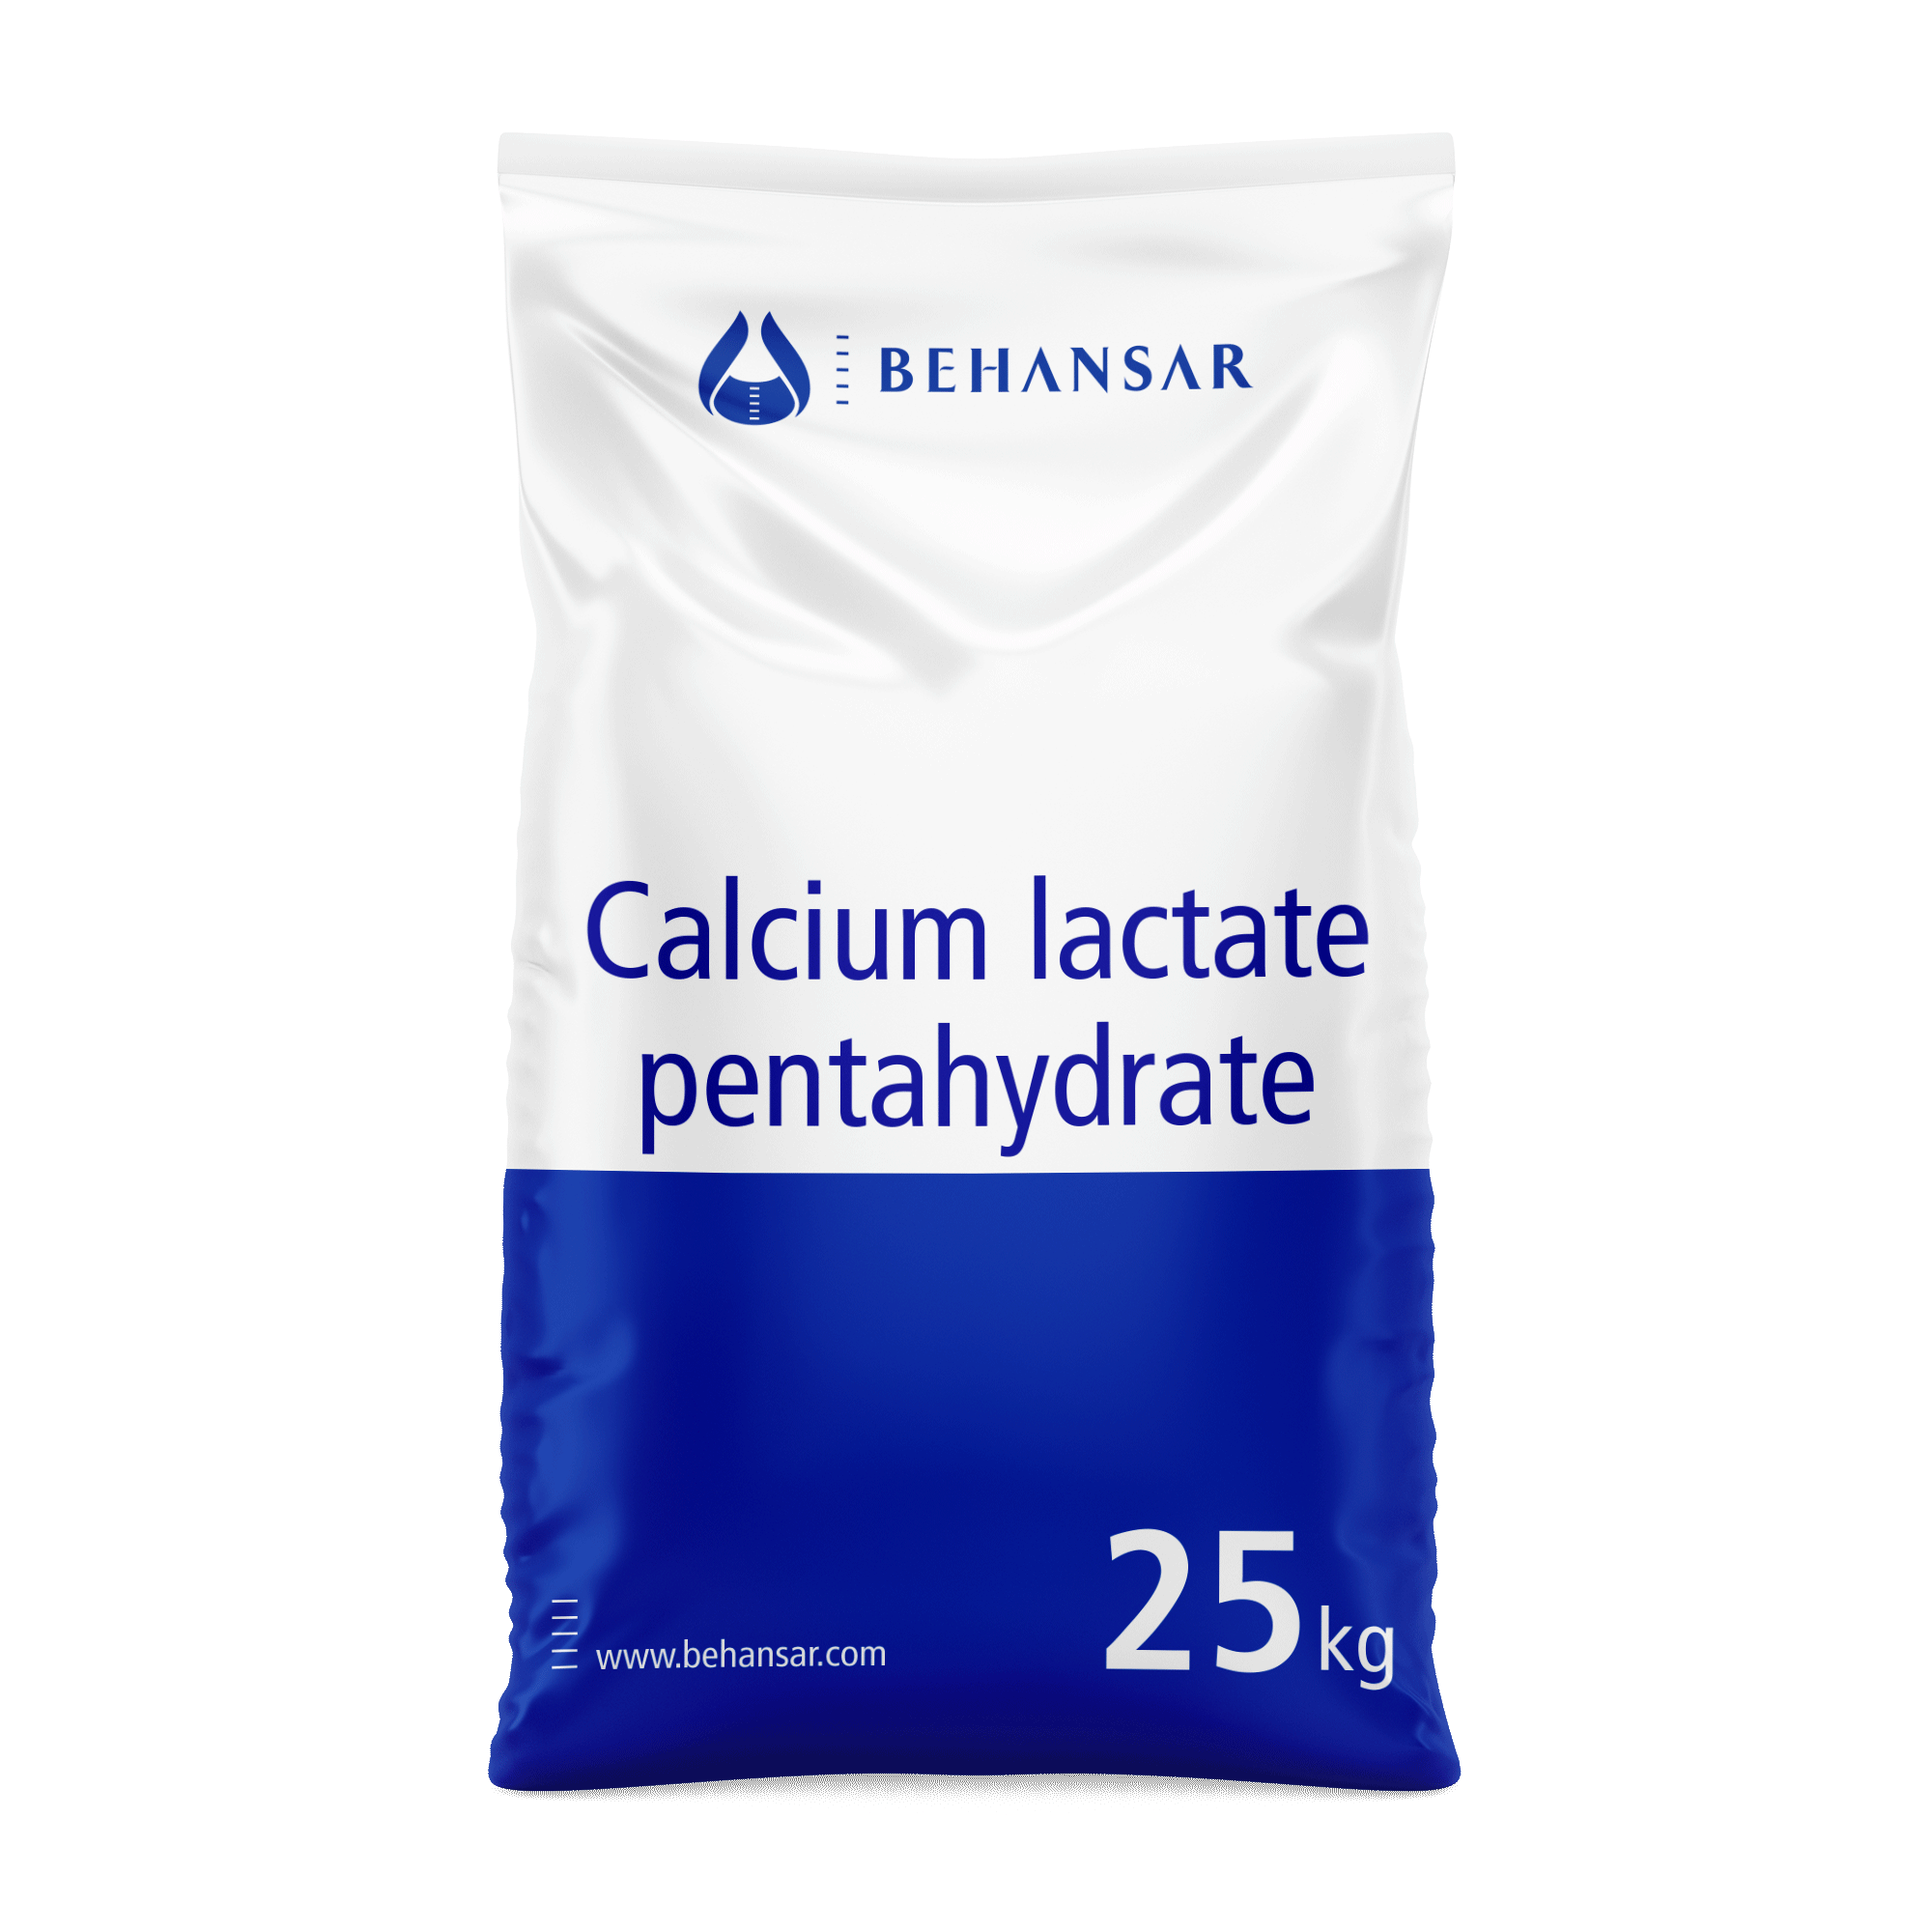 کلسیم لاکتات پنتا هیدرات یکی از تولیدات شرکت بهانسار است